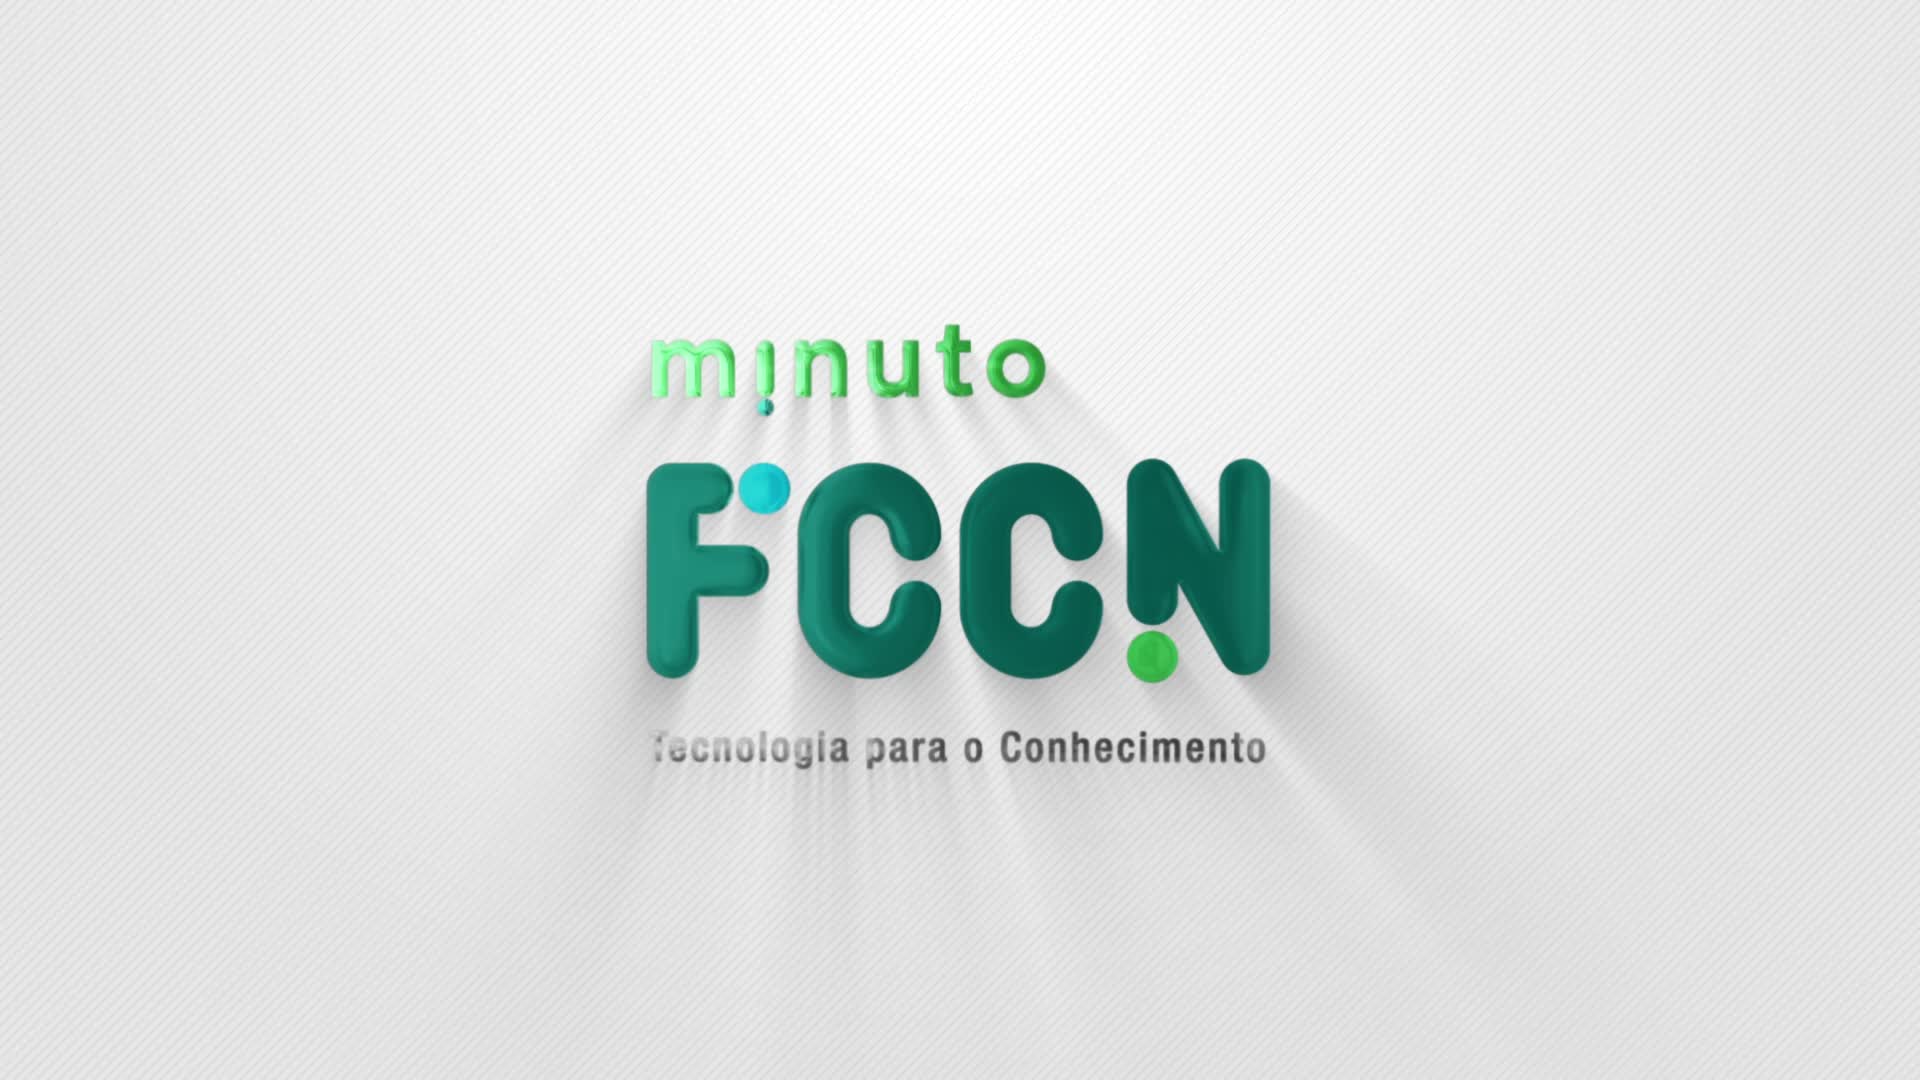  Minuto FCCN - MOOC | NAU